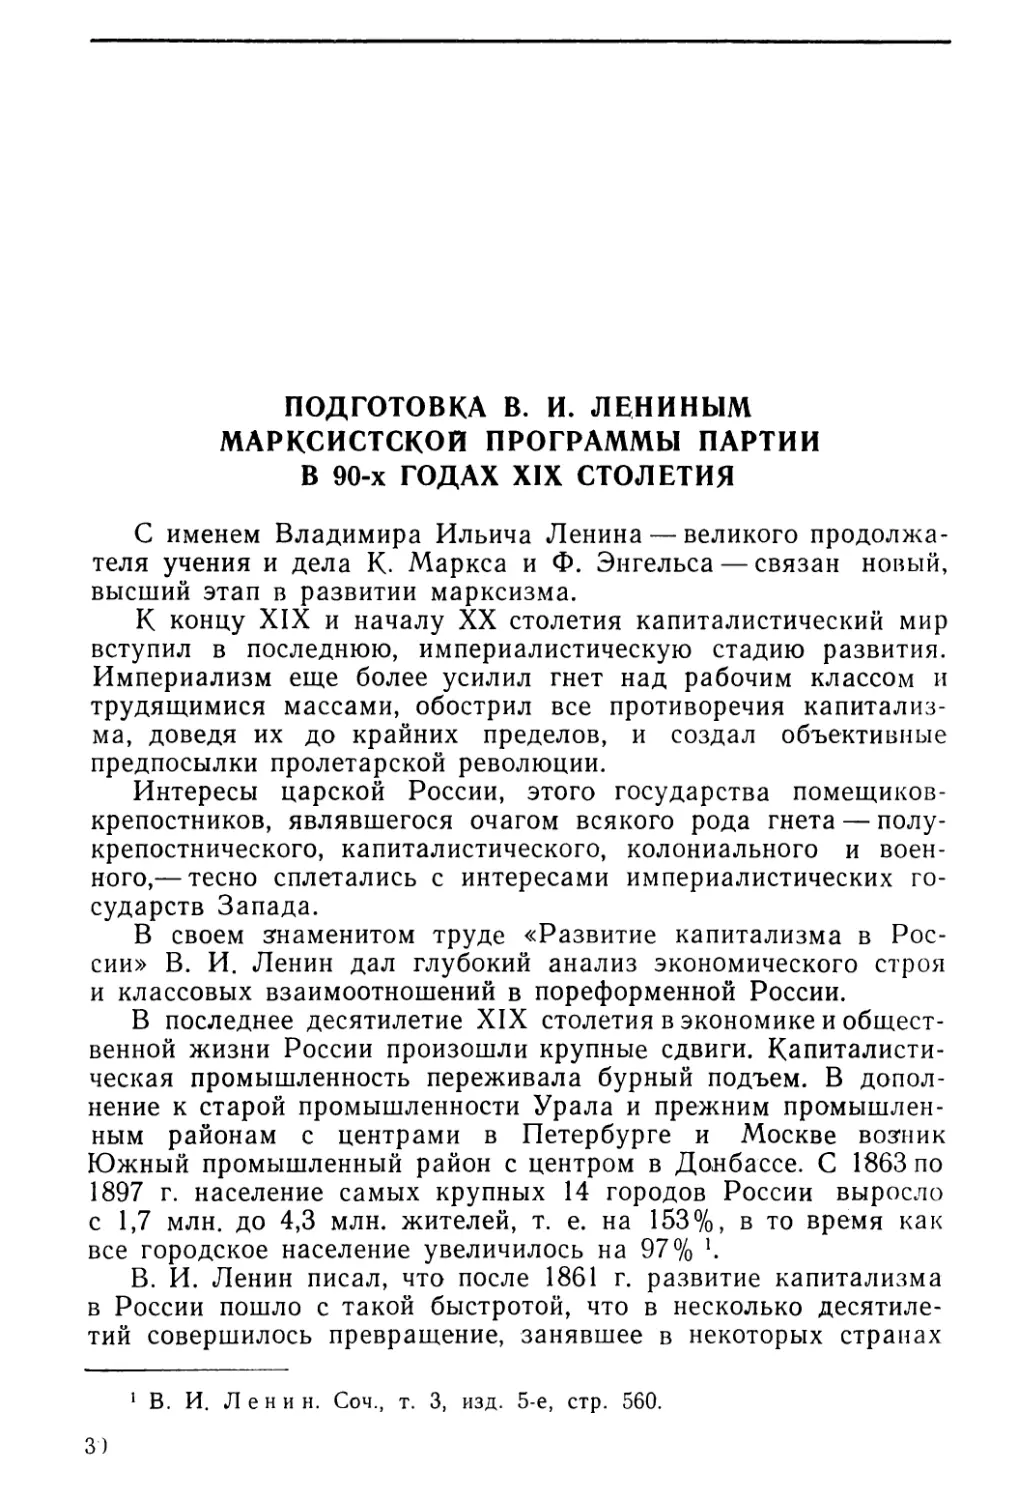 Подготовка В. И. Лениным марксистской программы партии в 90-х годах XIX столетия